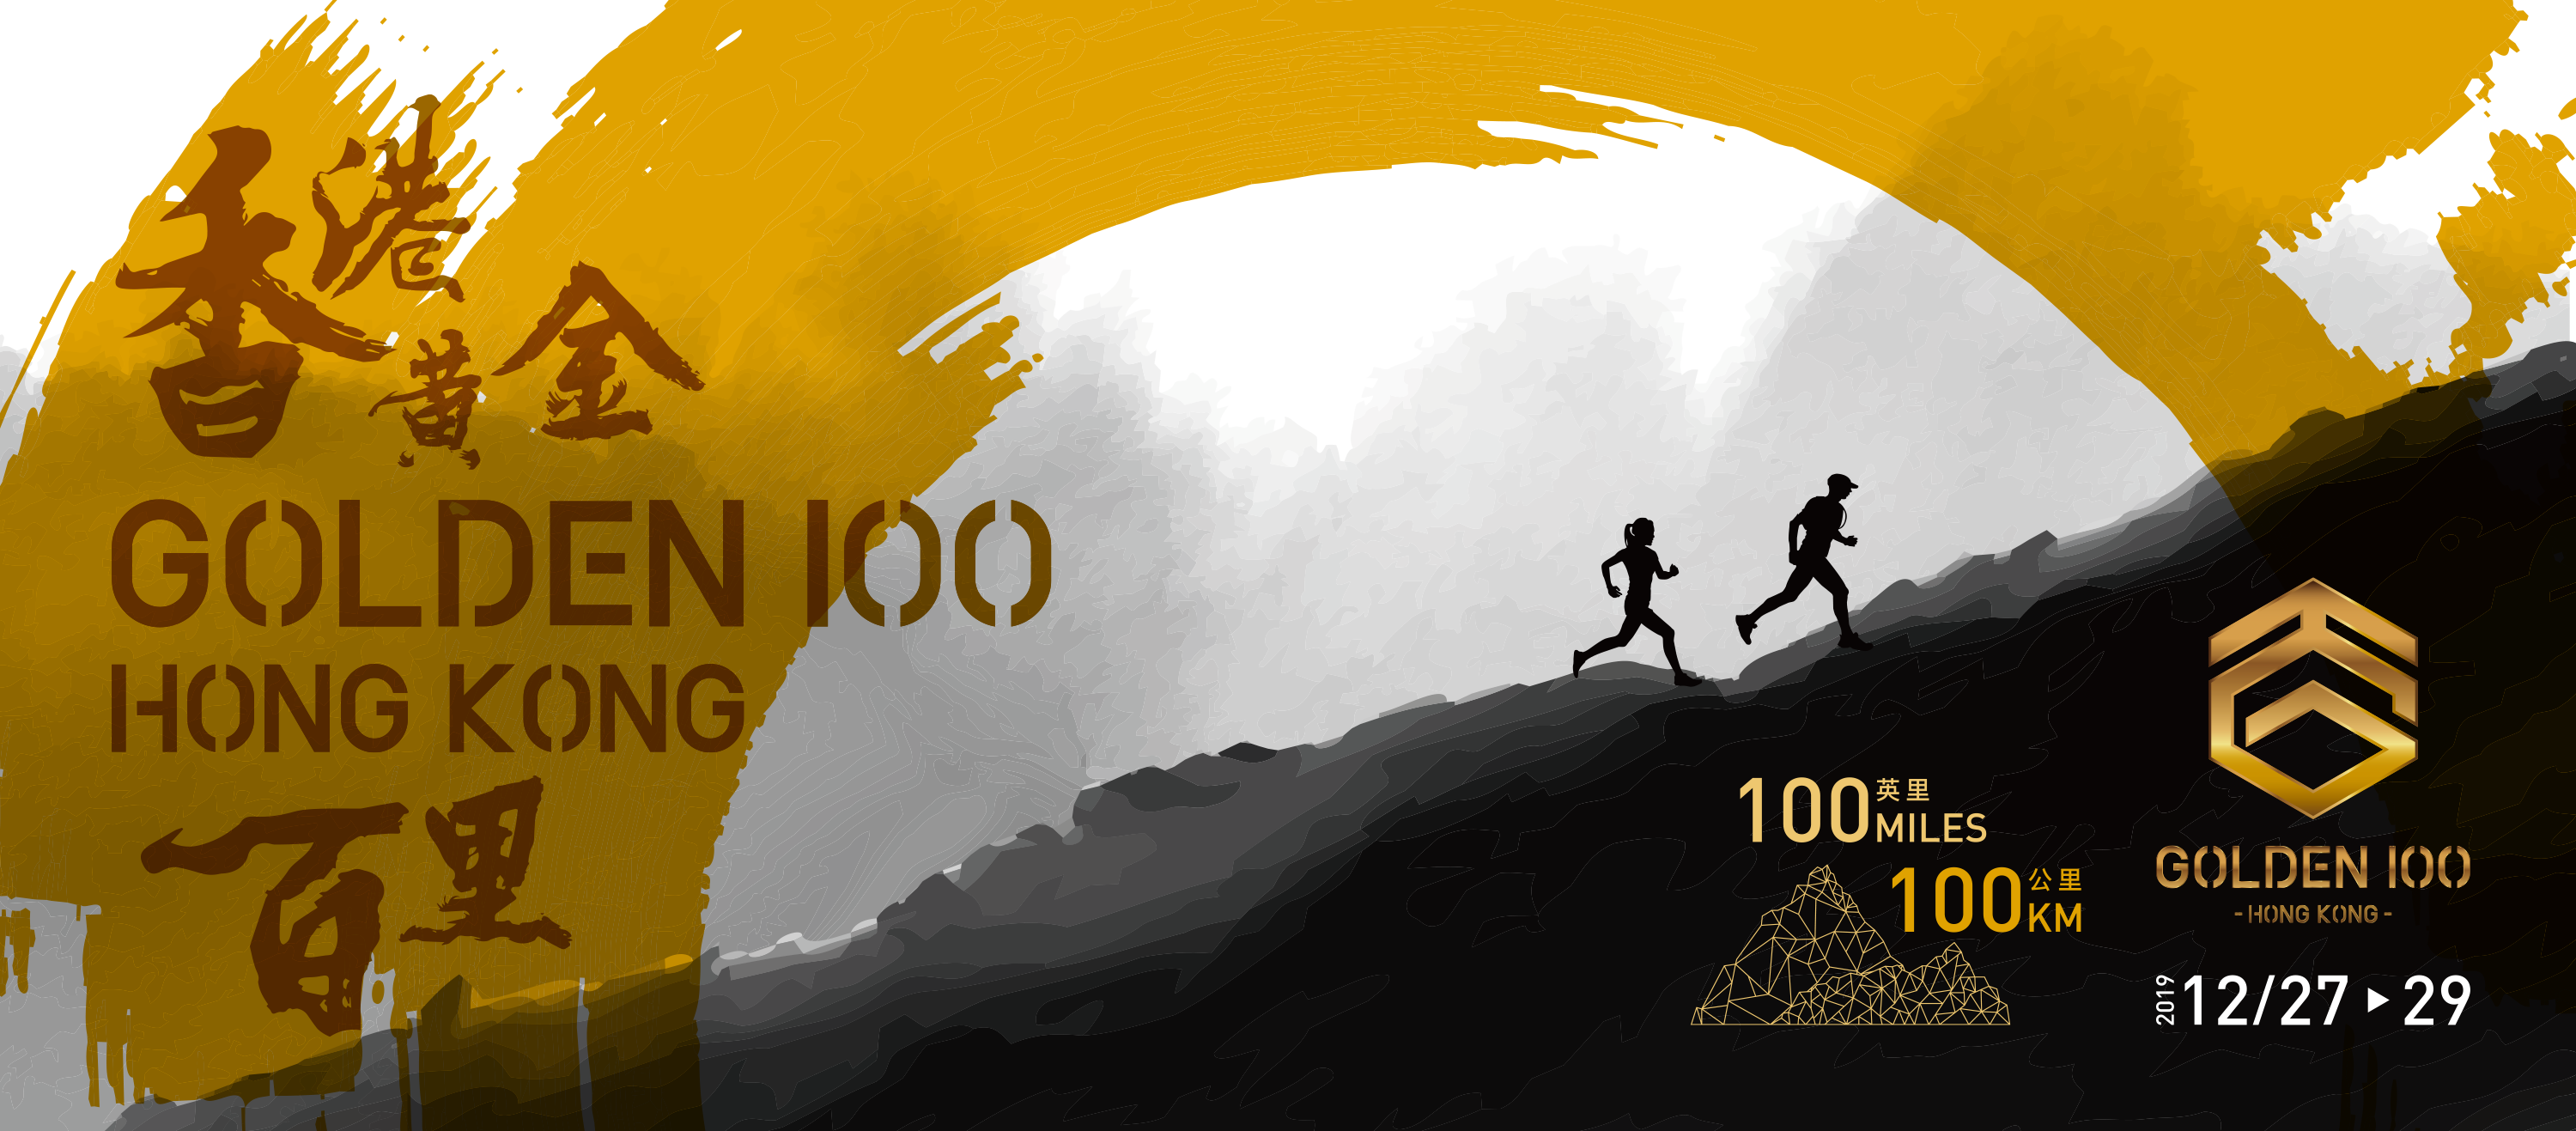 Golden 100 Hong Kong Race Update (26.11.2019)